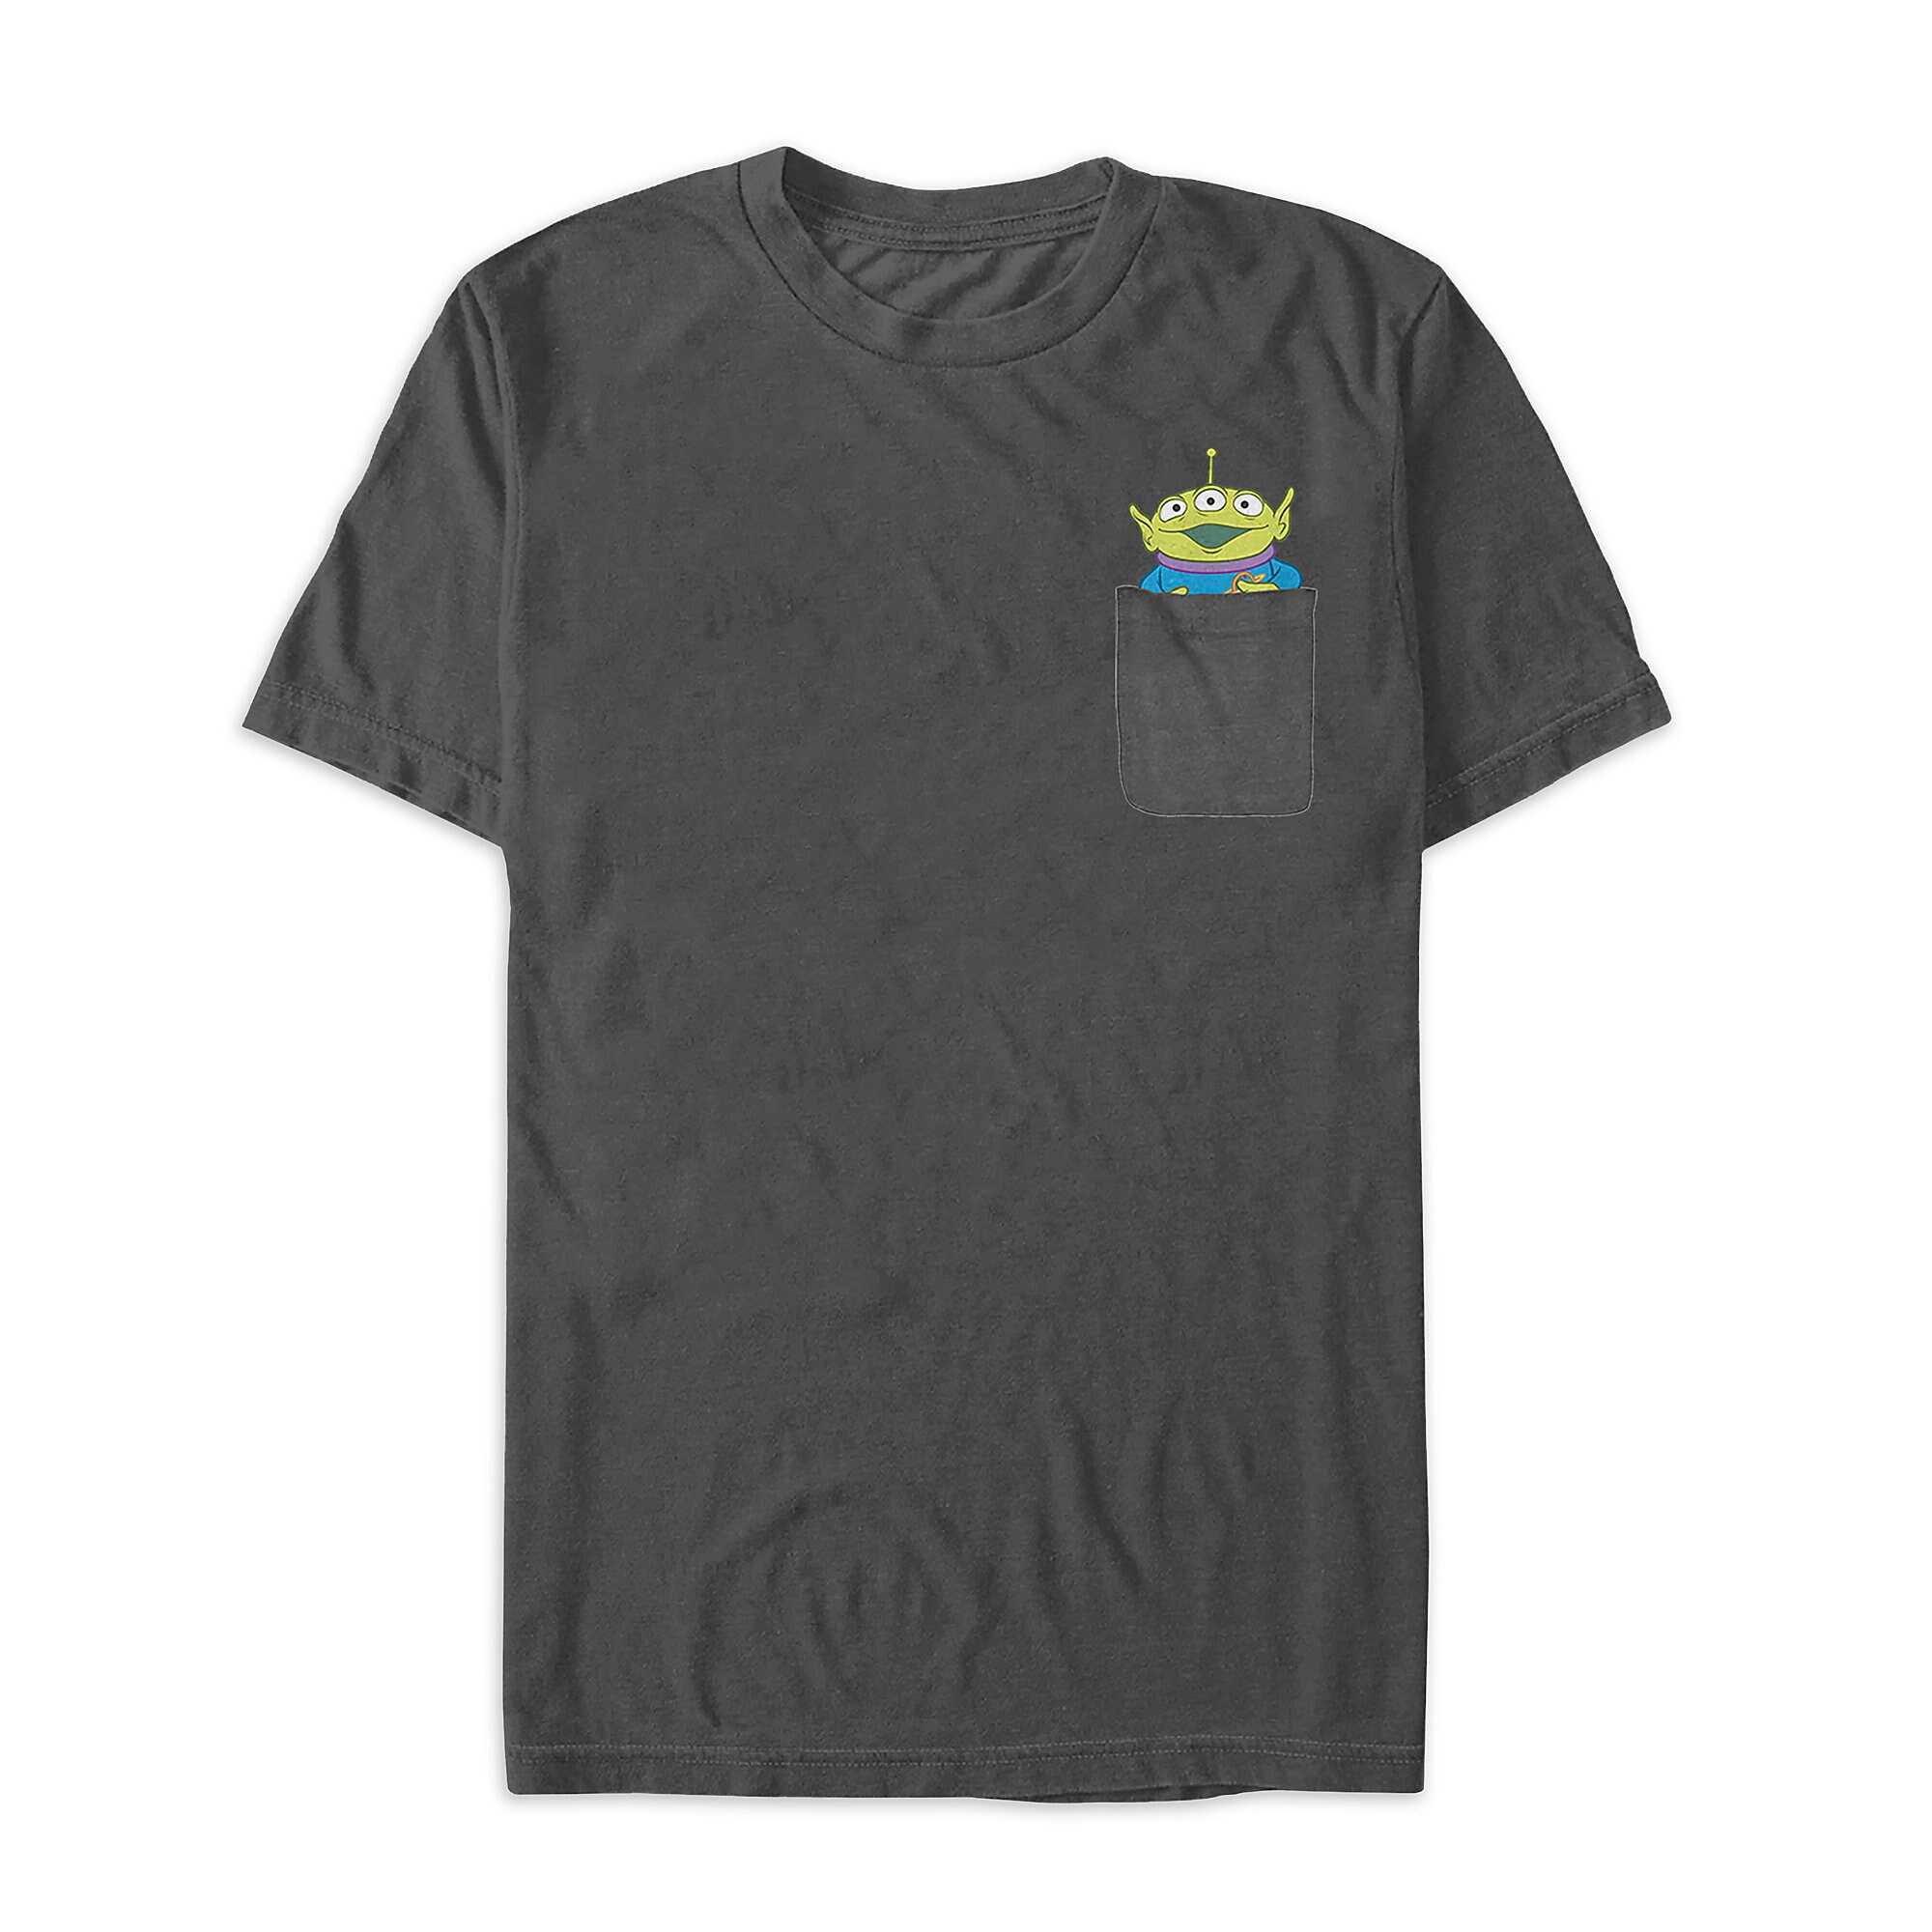 Toy Story Alien Pocket T-Shirt for Men